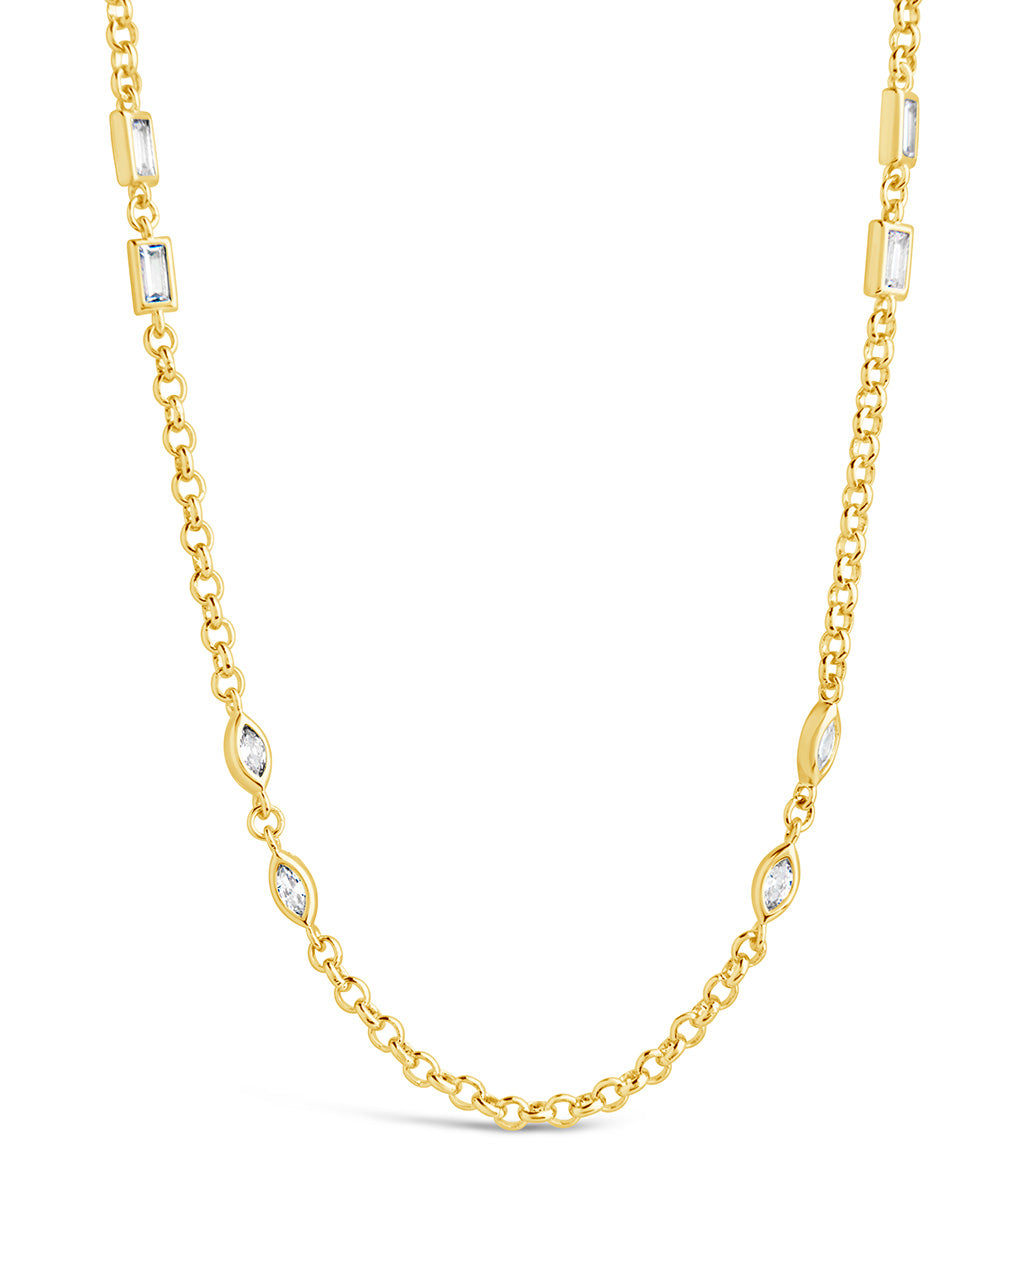 Marceline Necklace Necklace Sterling Forever Gold 